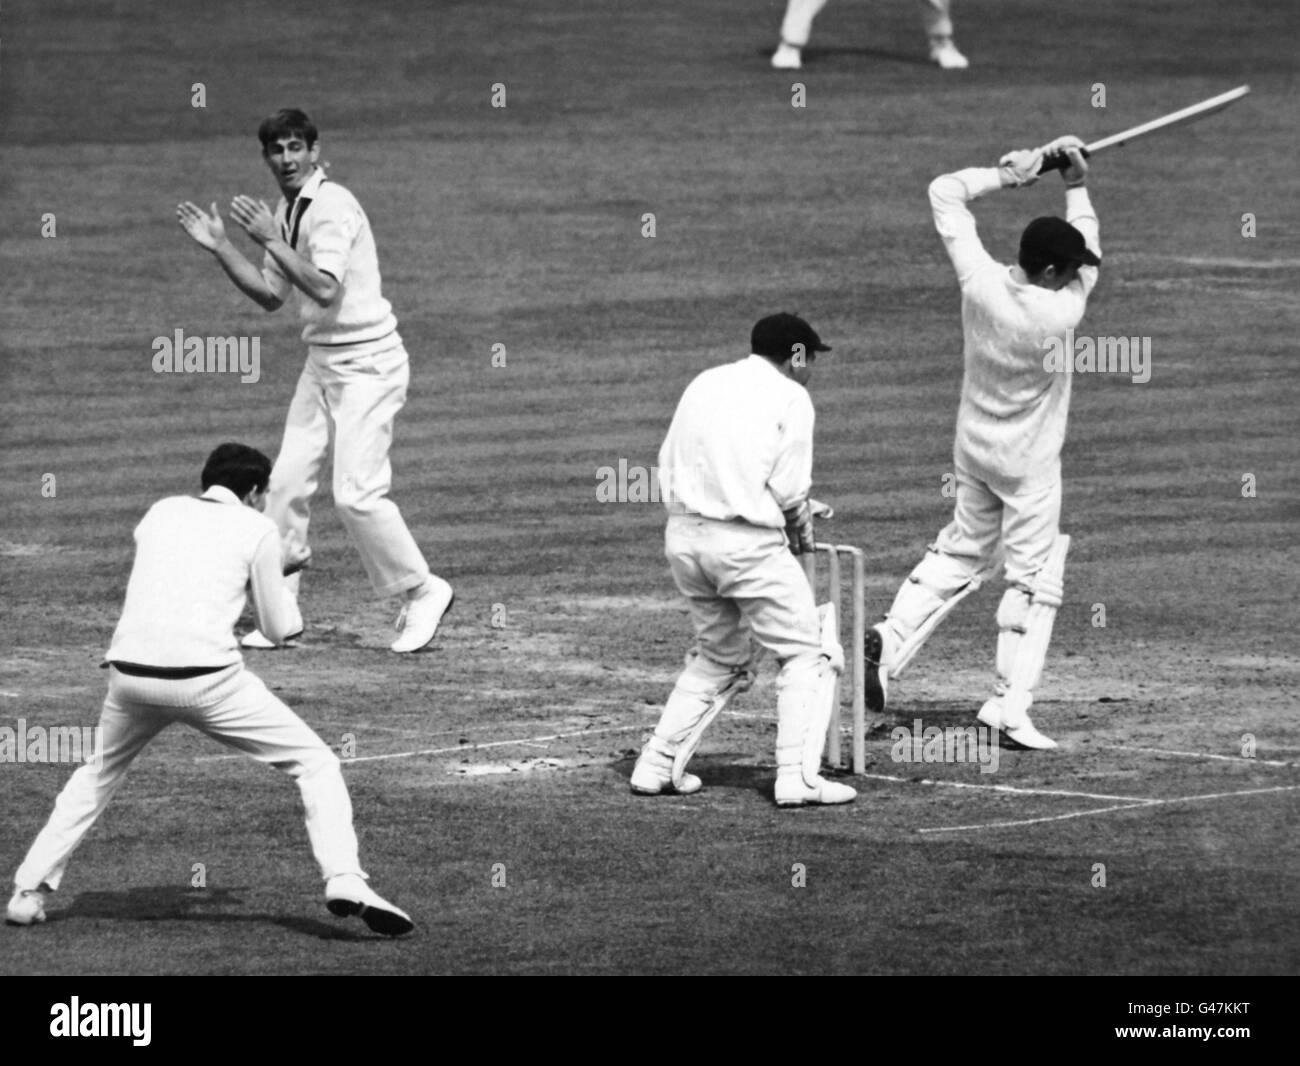 Cricket - XI du Président du MCC contre Australie - deuxième jour - Lord's. Keith Fletcher joue une balle d'Ashley Mallett Banque D'Images